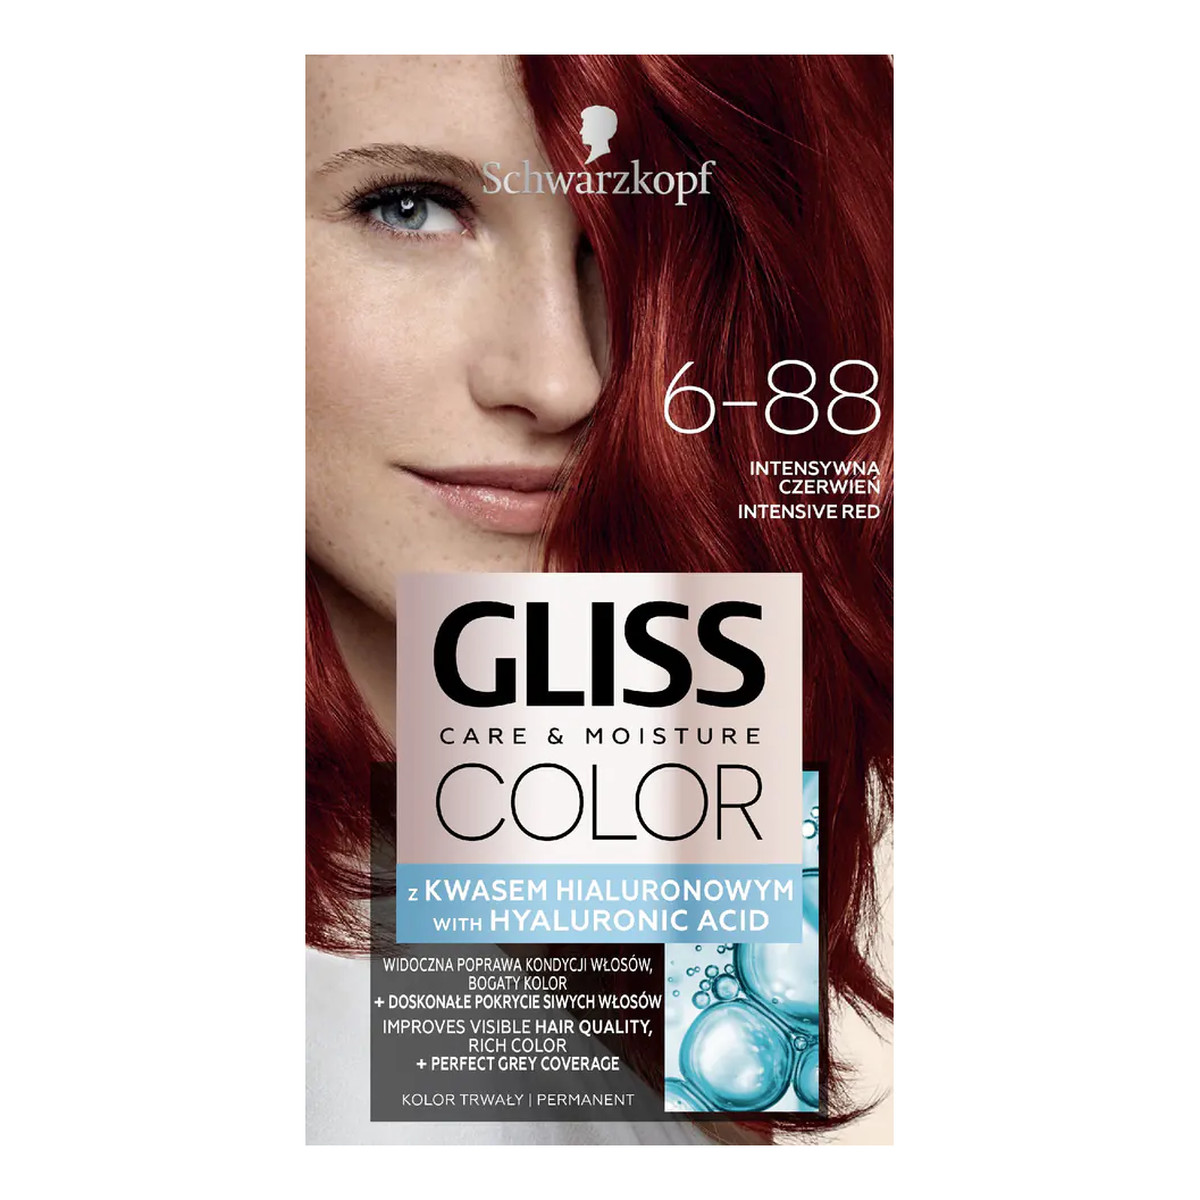 Gliss Color Krem koloryzujący do włosów